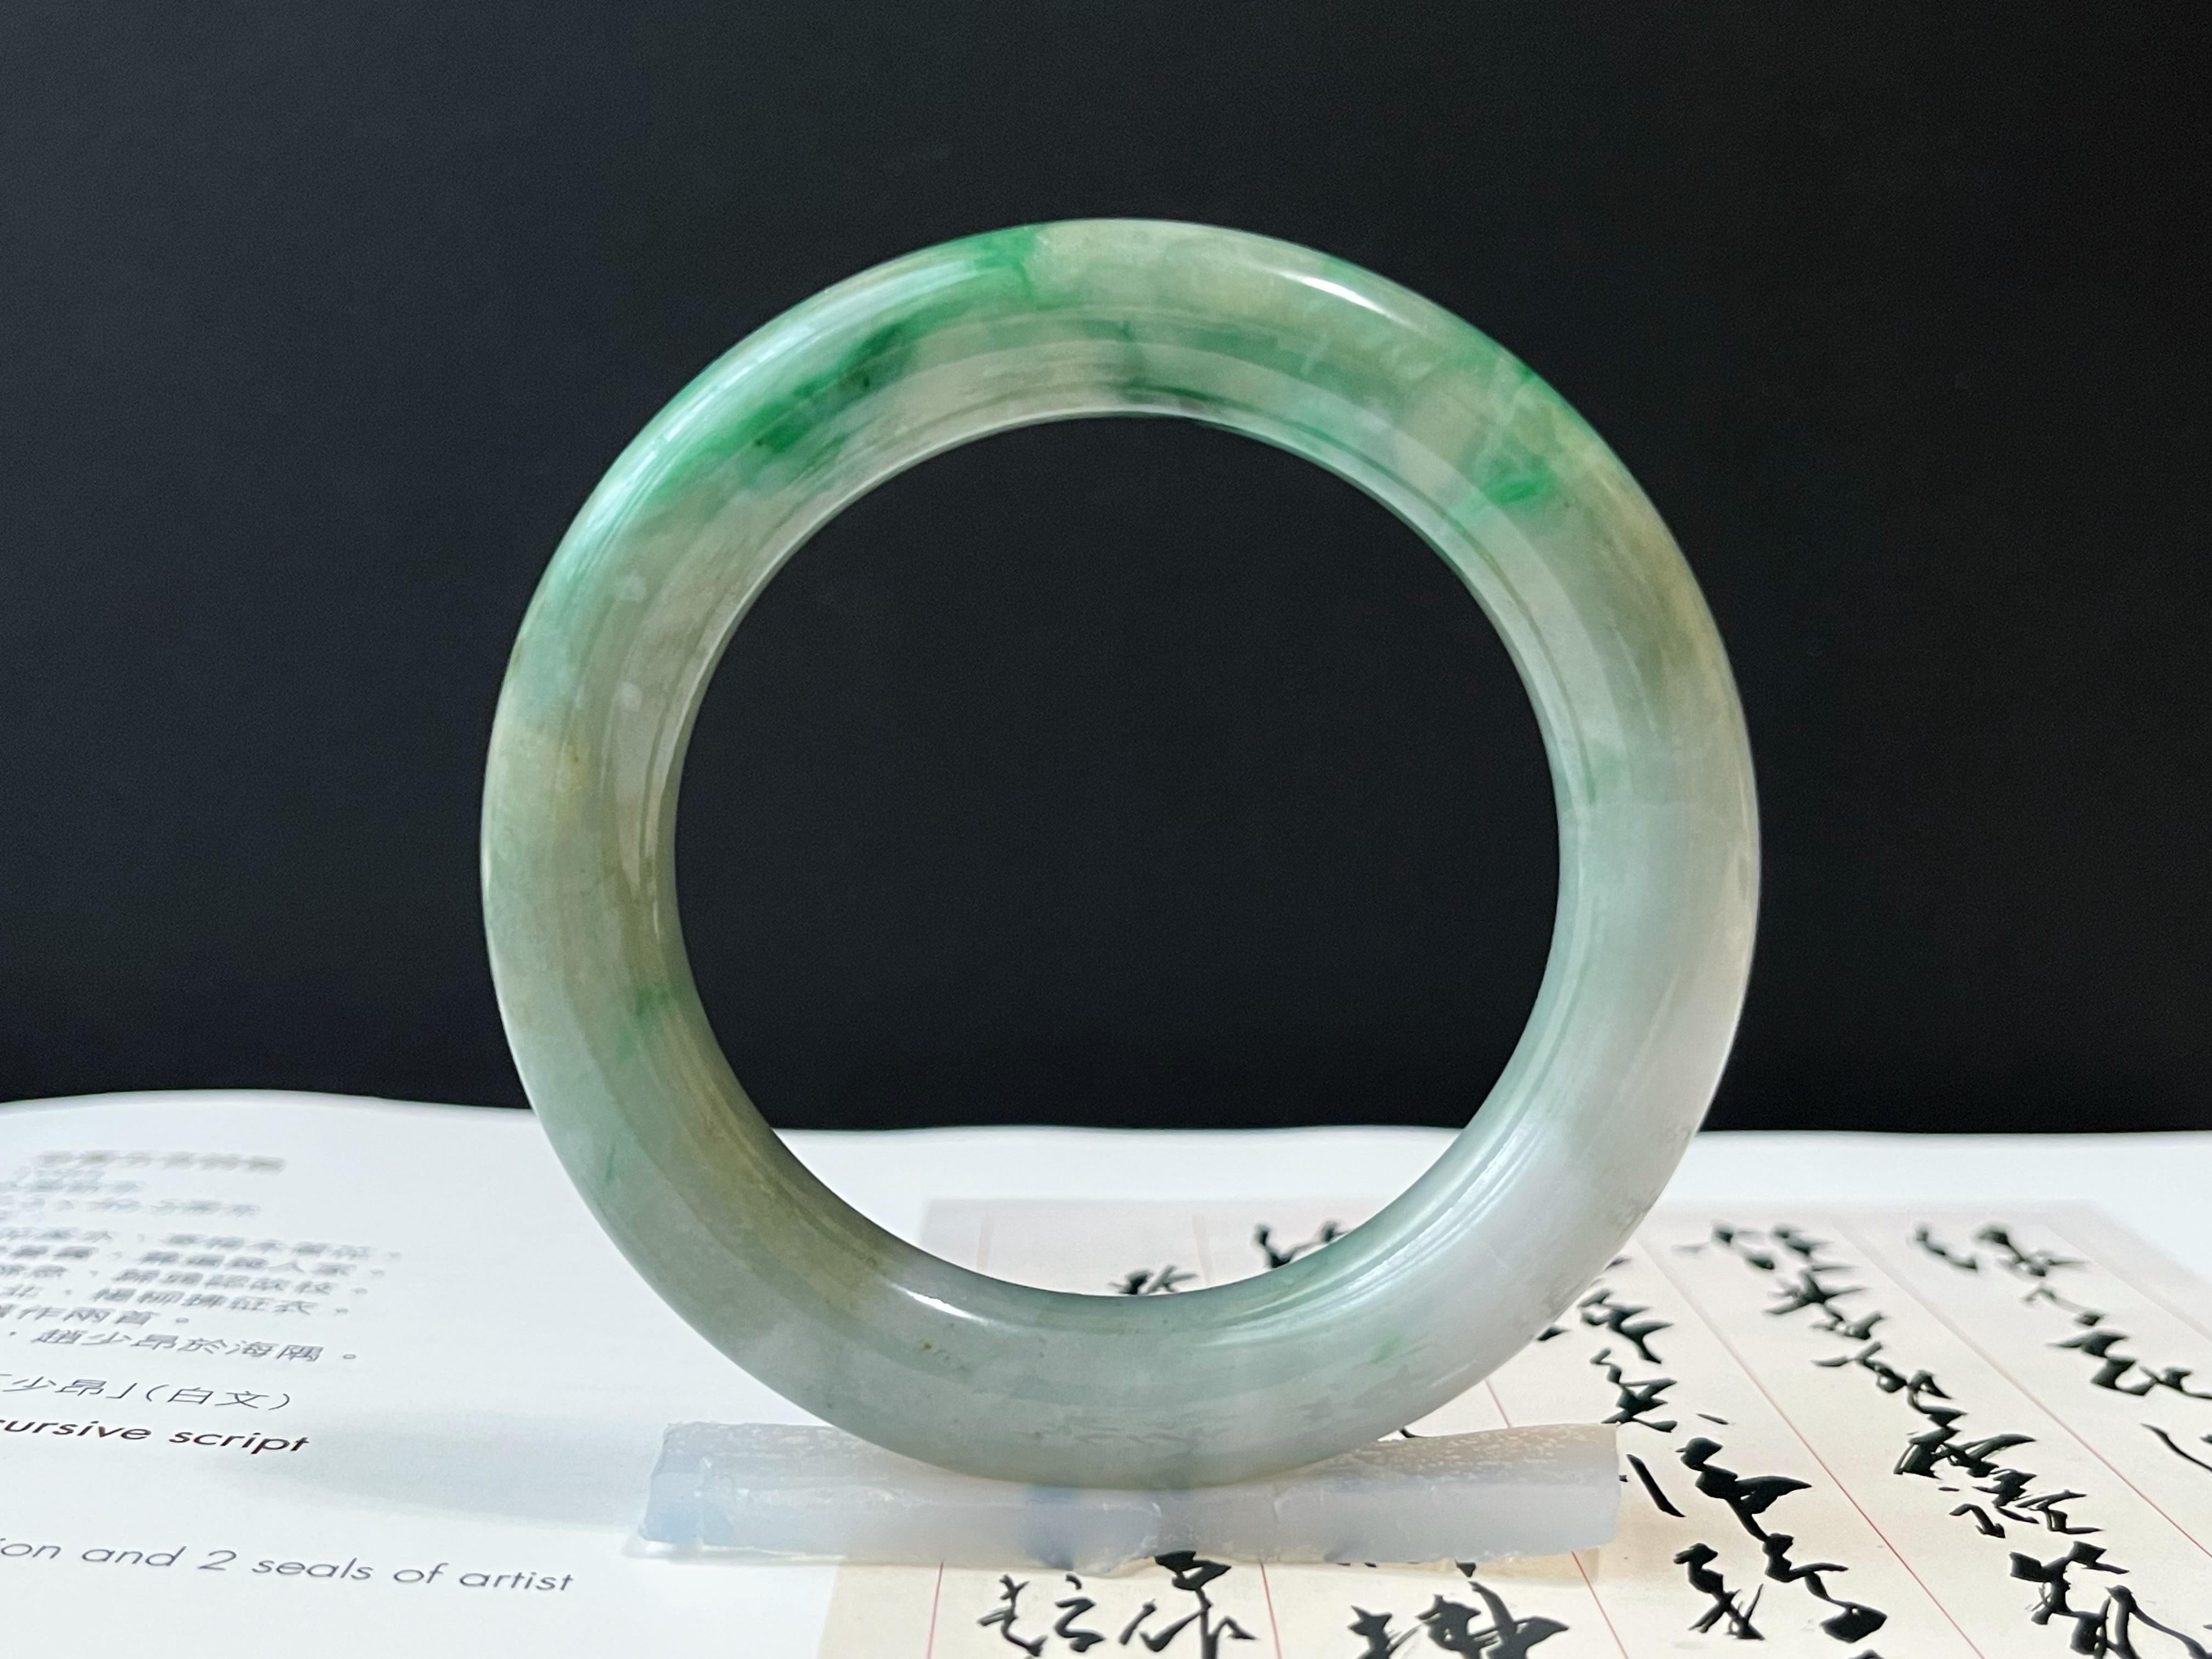 Ce magnifique bracelet en jade de qualité supérieure du Myanmar est composé à 100 % de jadéite naturelle, non traitée et non teintée de qualité A. L'étonnant motif floral vert dont Mère Nature a fait don rend ce bracelet unique et attrayant. 
 
Le